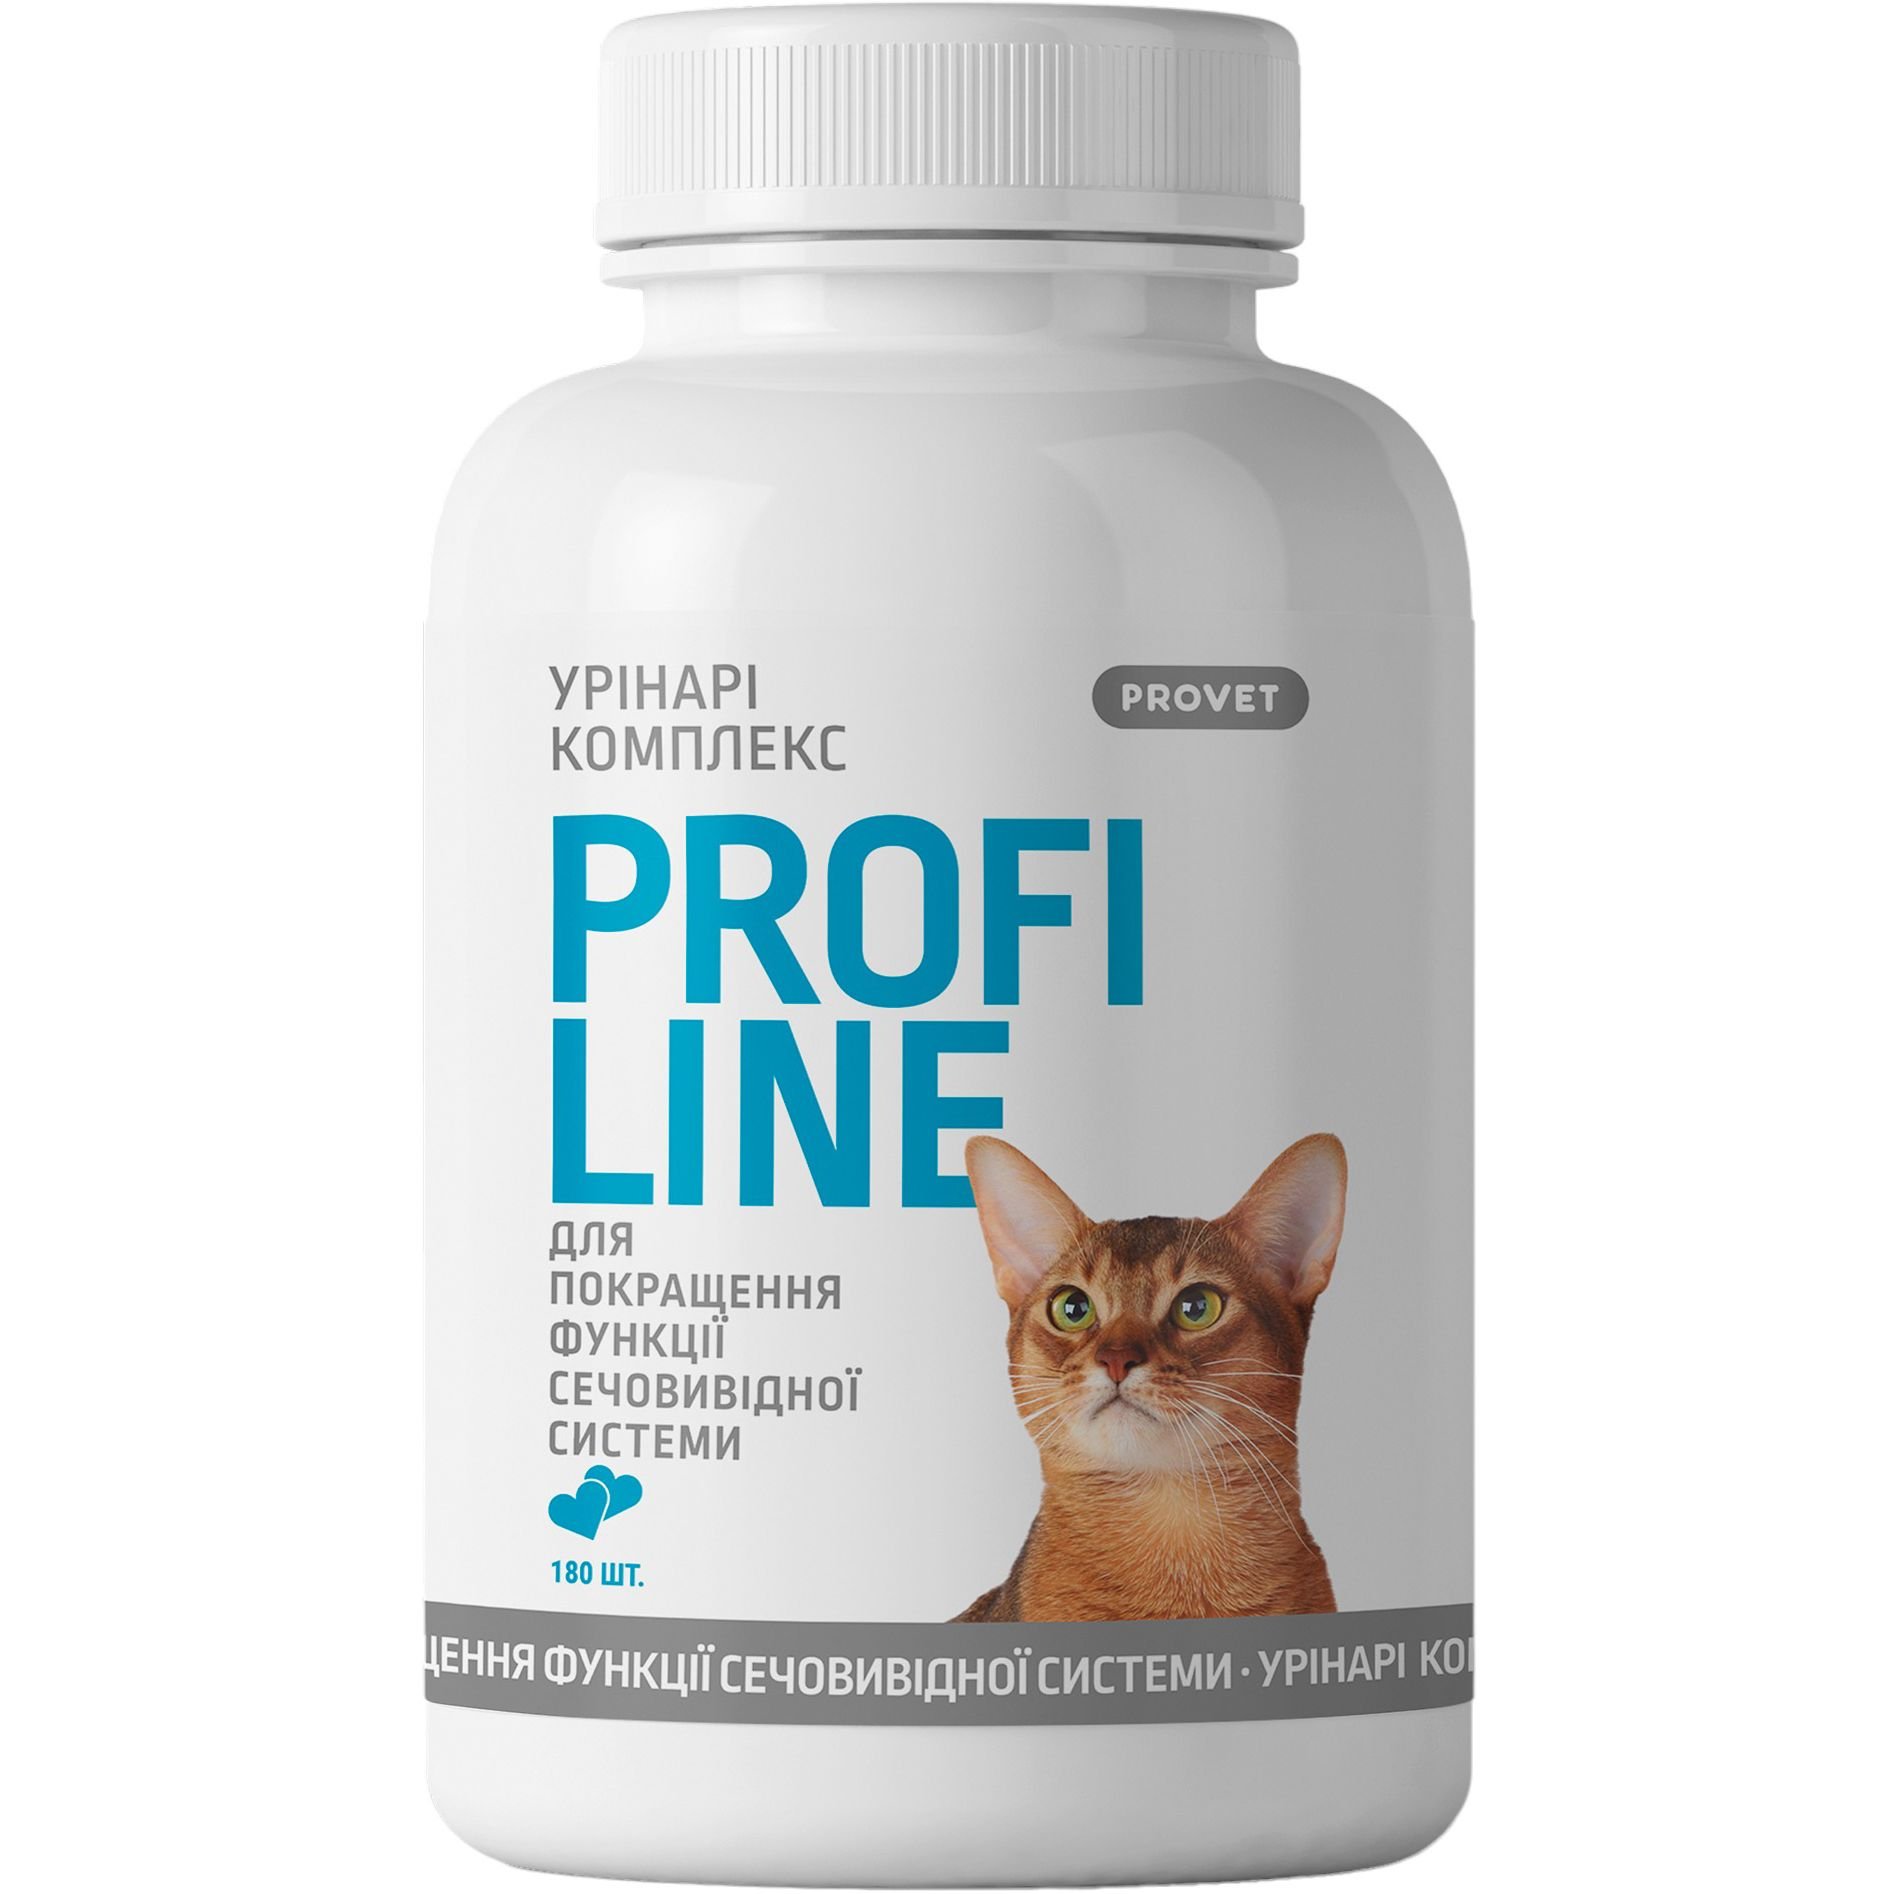 Вітаміни для котів ProVET Profiline Урінарі комплекс для покращення функції сечовивідної системи 180 таблеток - фото 1